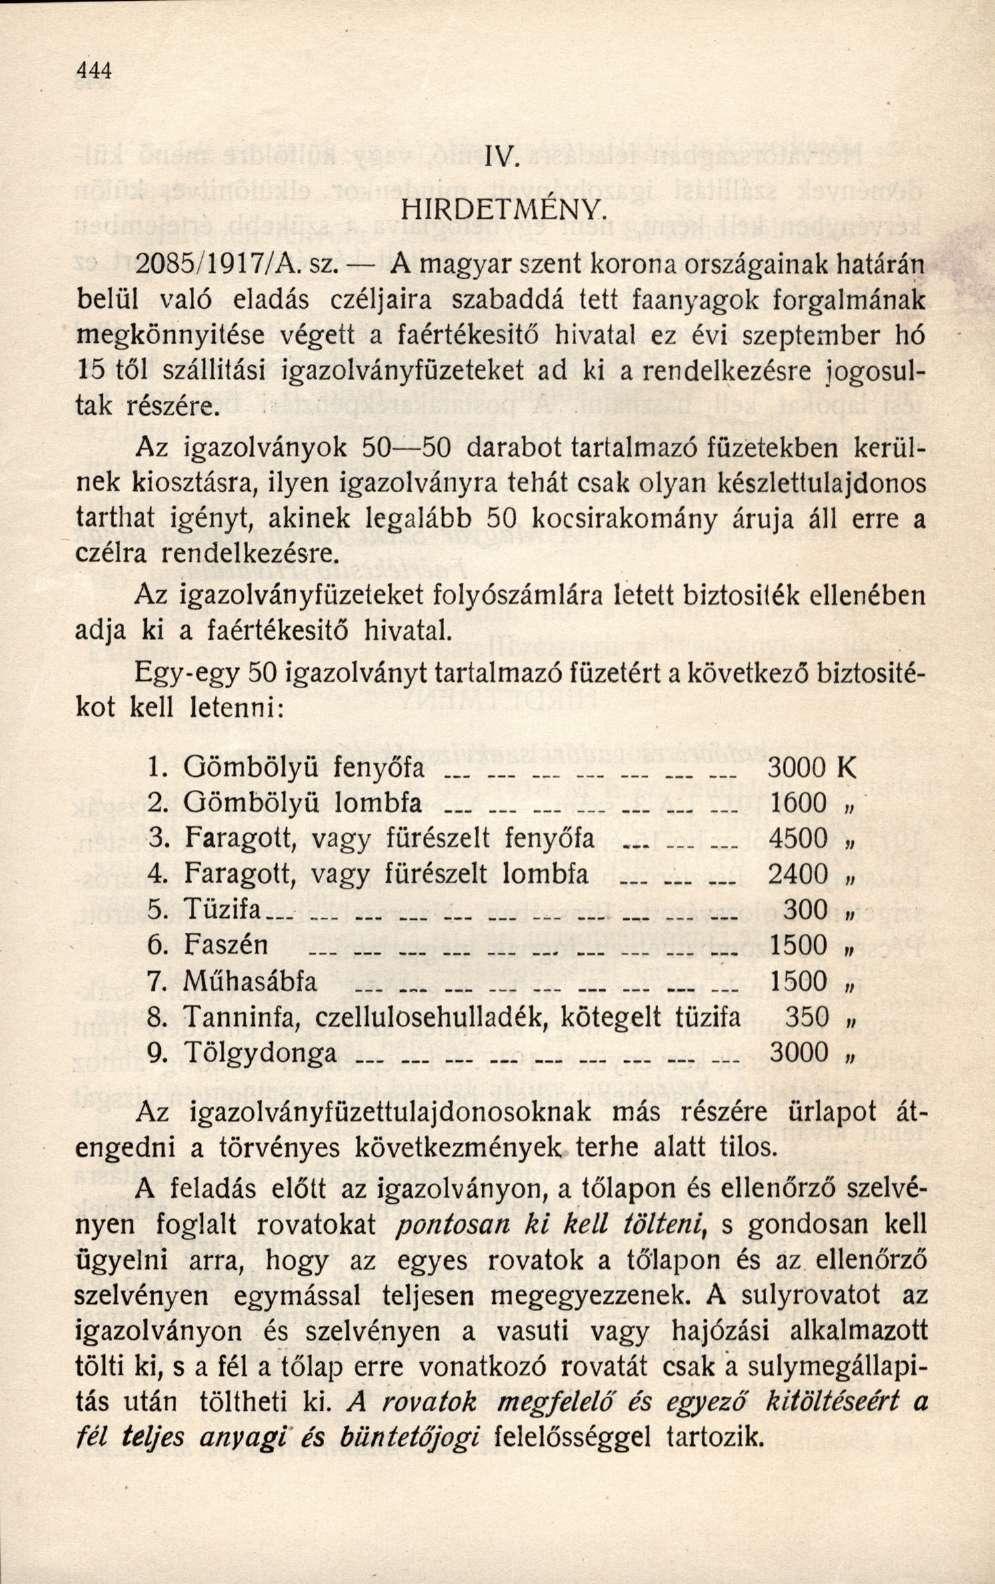 HIRDETMÉNY. 2085/1917/A. sz.